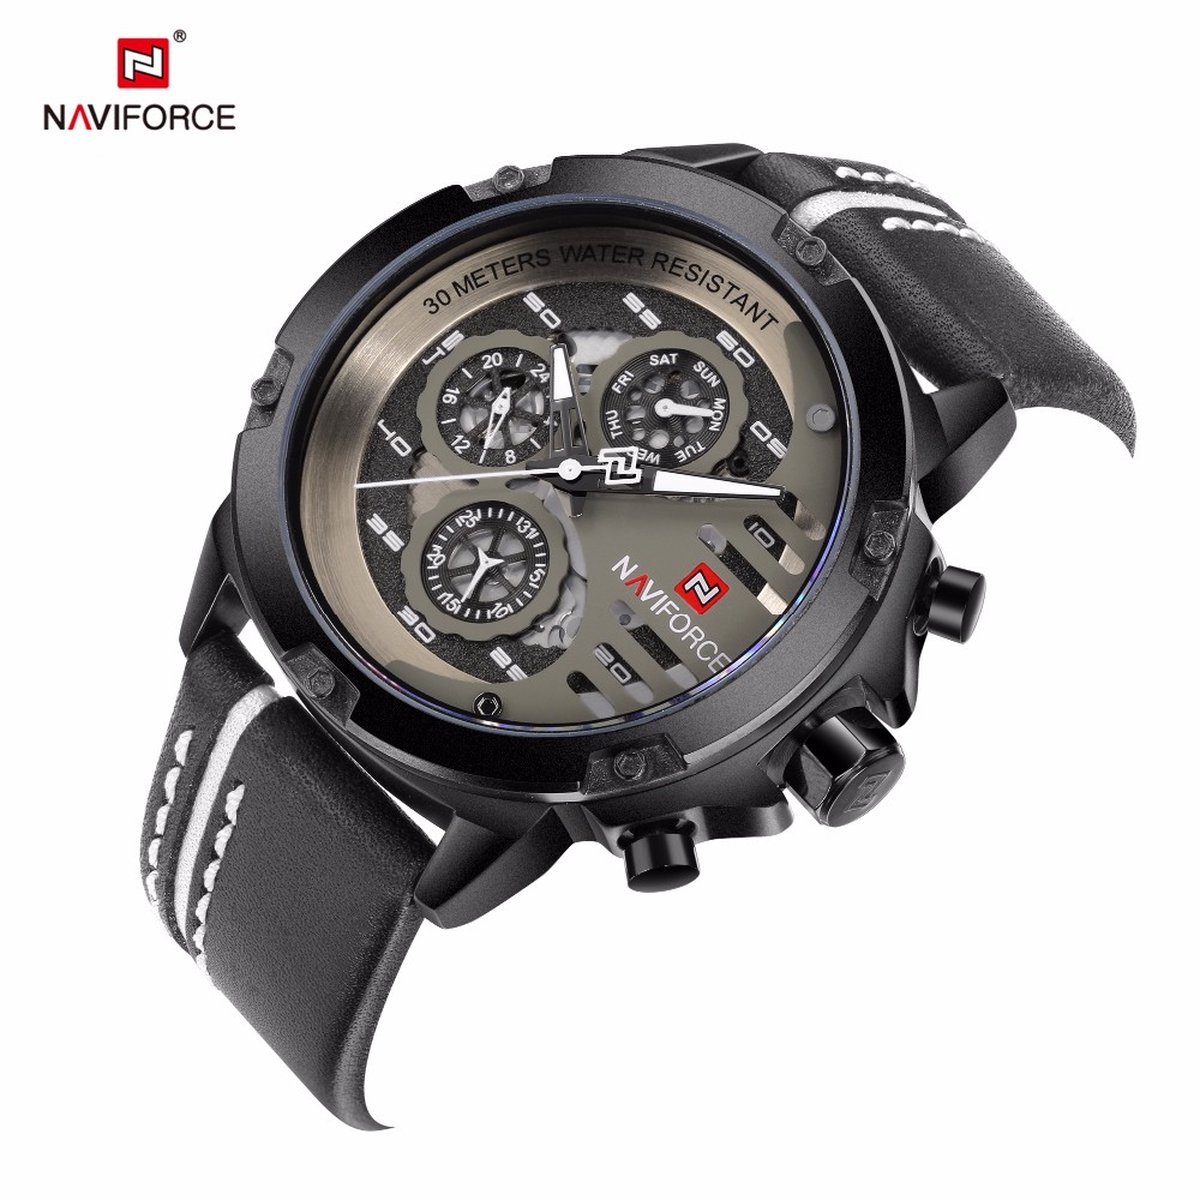 NAVIFORCE horloge voor mannen, met zwarte lederen polsband, zwarte horlogekast en grijze wijzerplaat met in het donker oplichtende wijzers ( model 9110 BWB ), verpakt in een mooie geschenkdoos